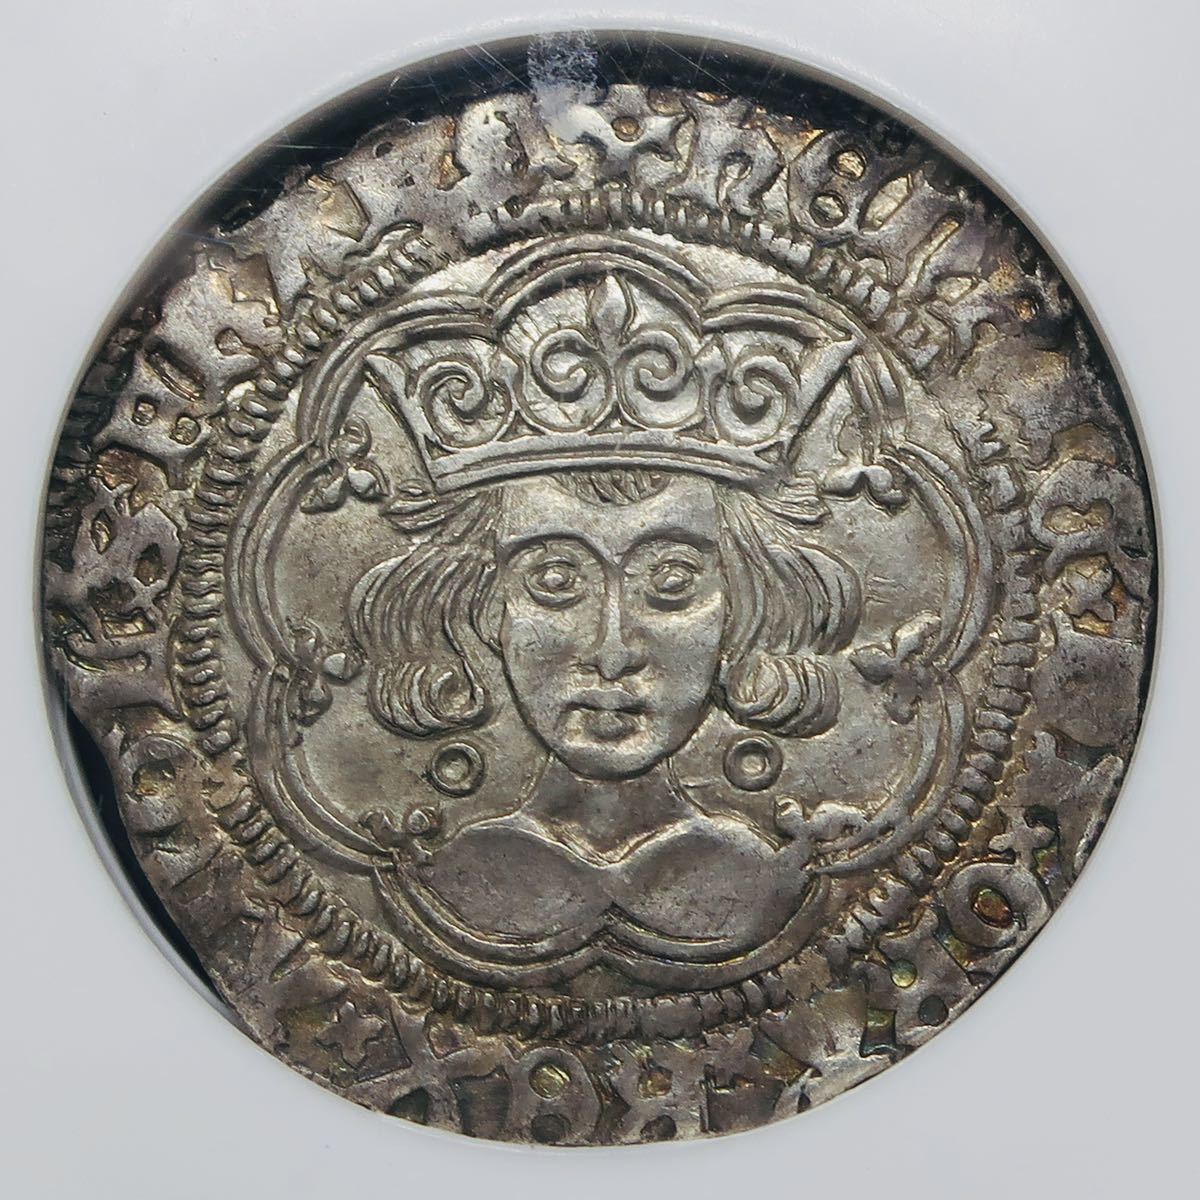 素晴らしい価格 出産祝い イギリス 1422-1427 4ペンス グロート 銀貨 ヘンリー6世 S-1836 MS63 NGC 高鑑定 アンティークコイン style-ur.com style-ur.com